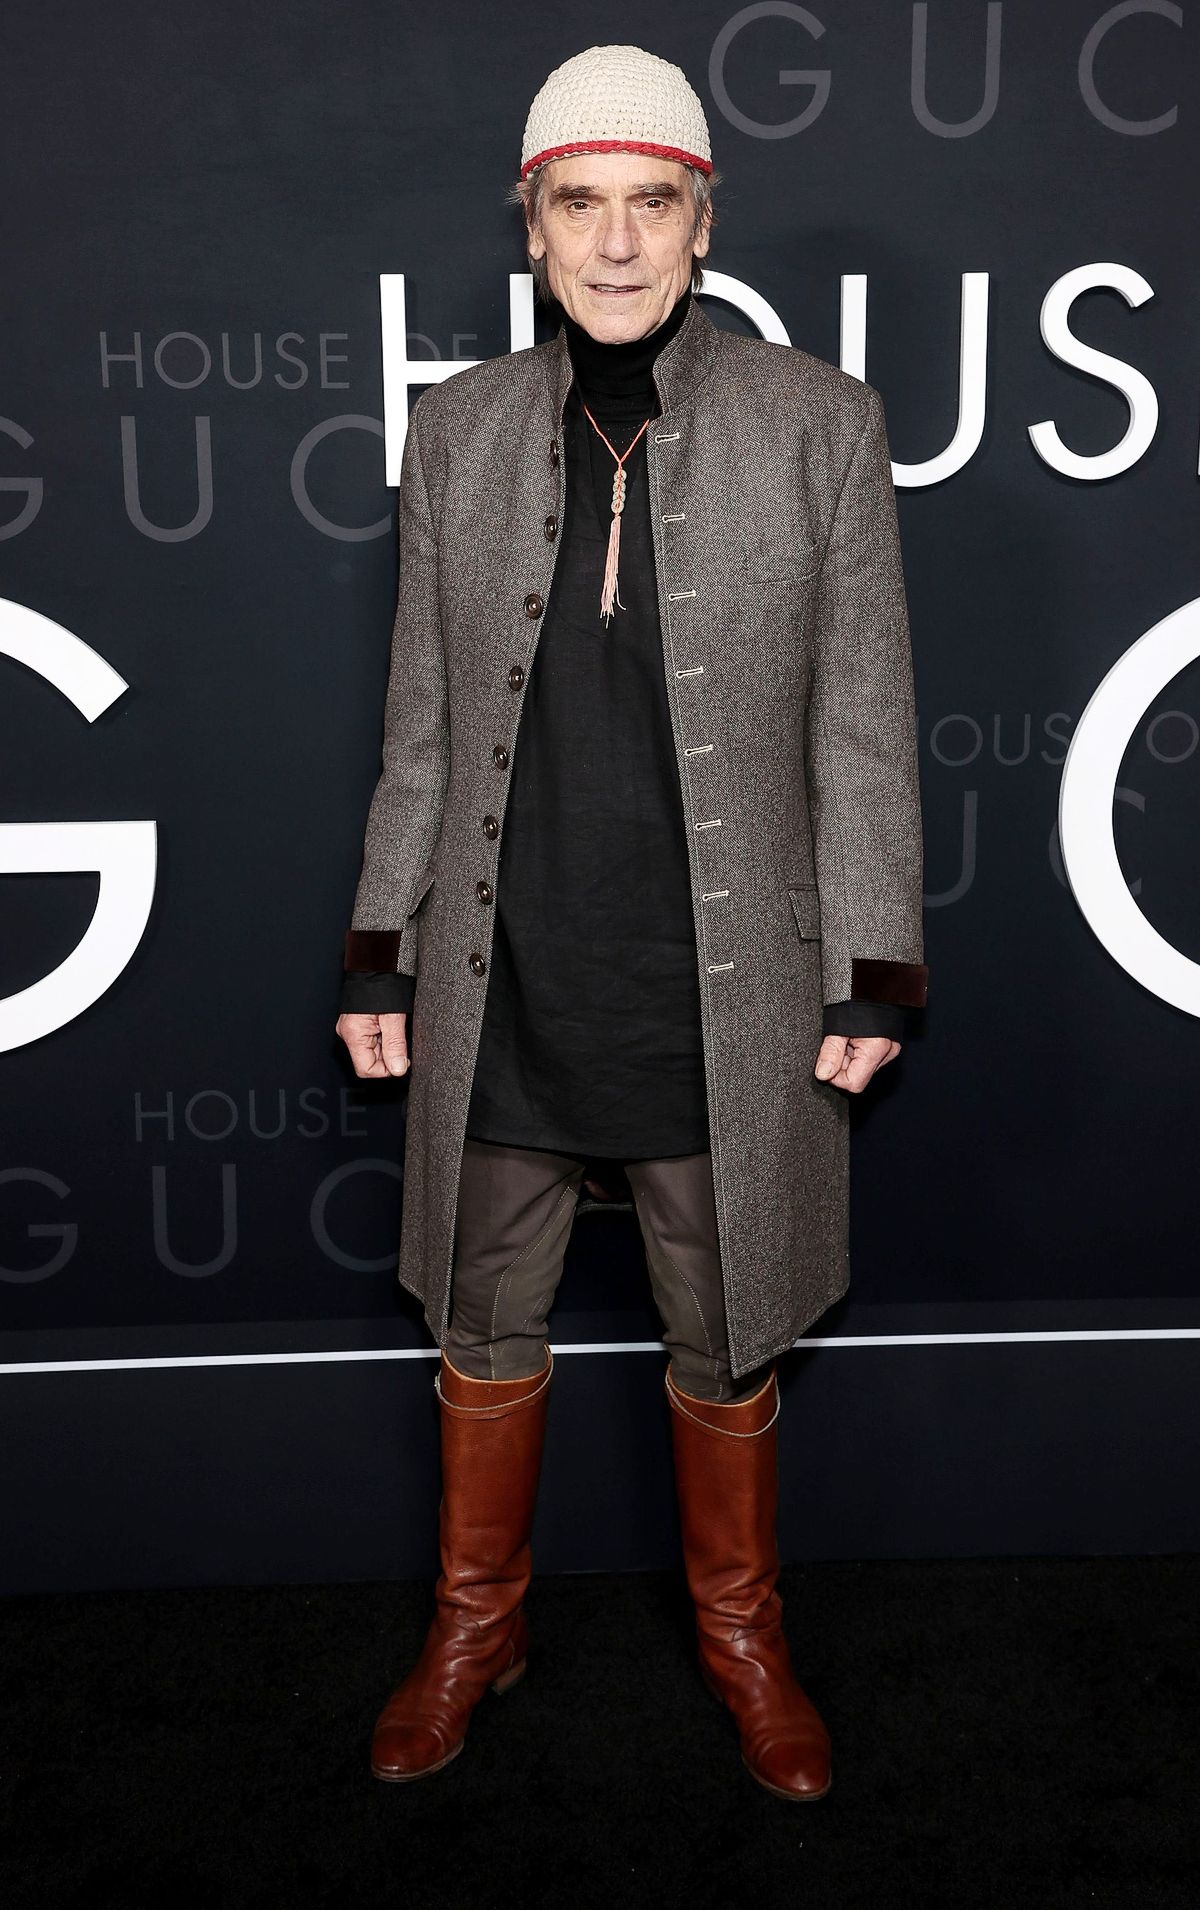 Джереми Айронс на нью-йоркской премьере фильма «Дом Gucci», фото 1